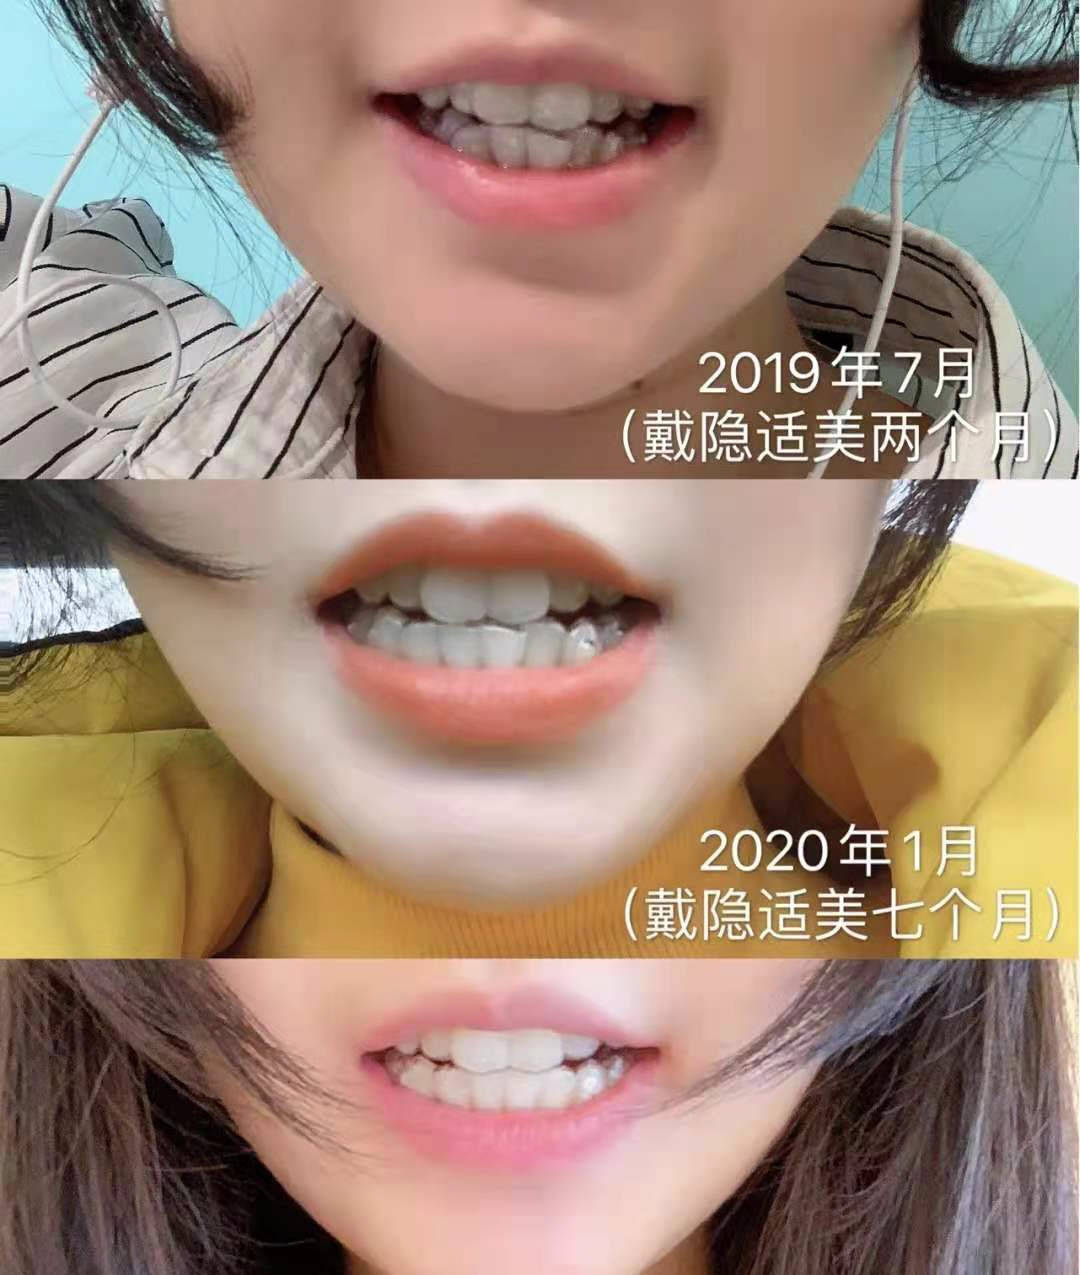 隐形牙套1~12月变化图图片